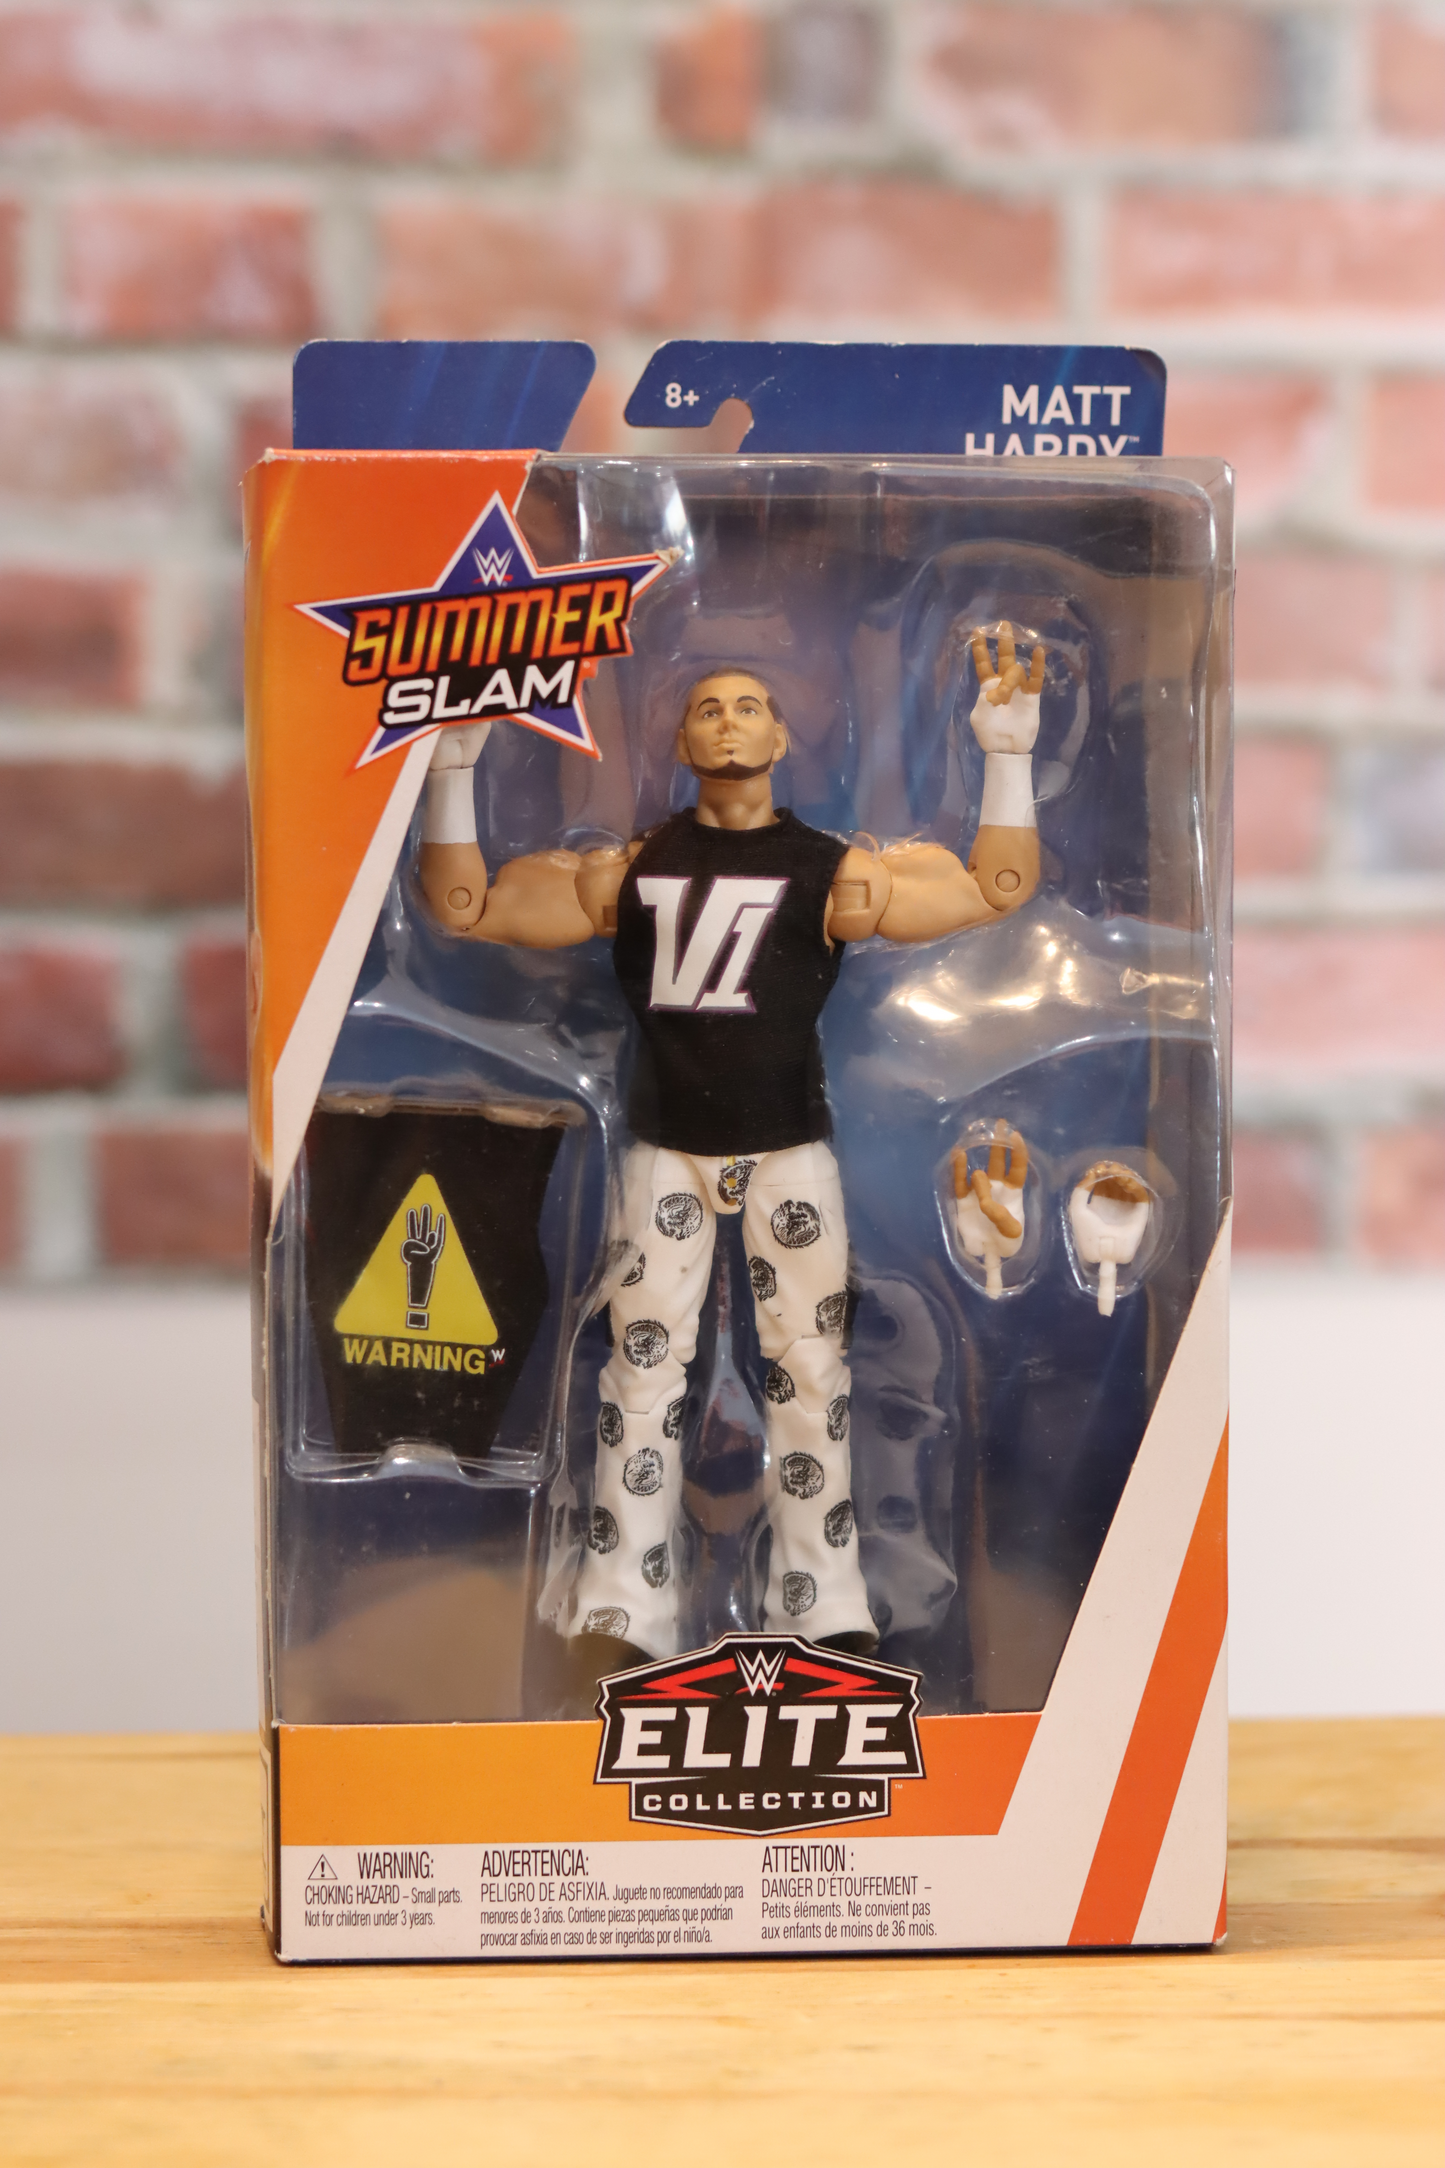 2018 Mattel Summer Slam WWF WWE Wrestling Figure Matt Hardy